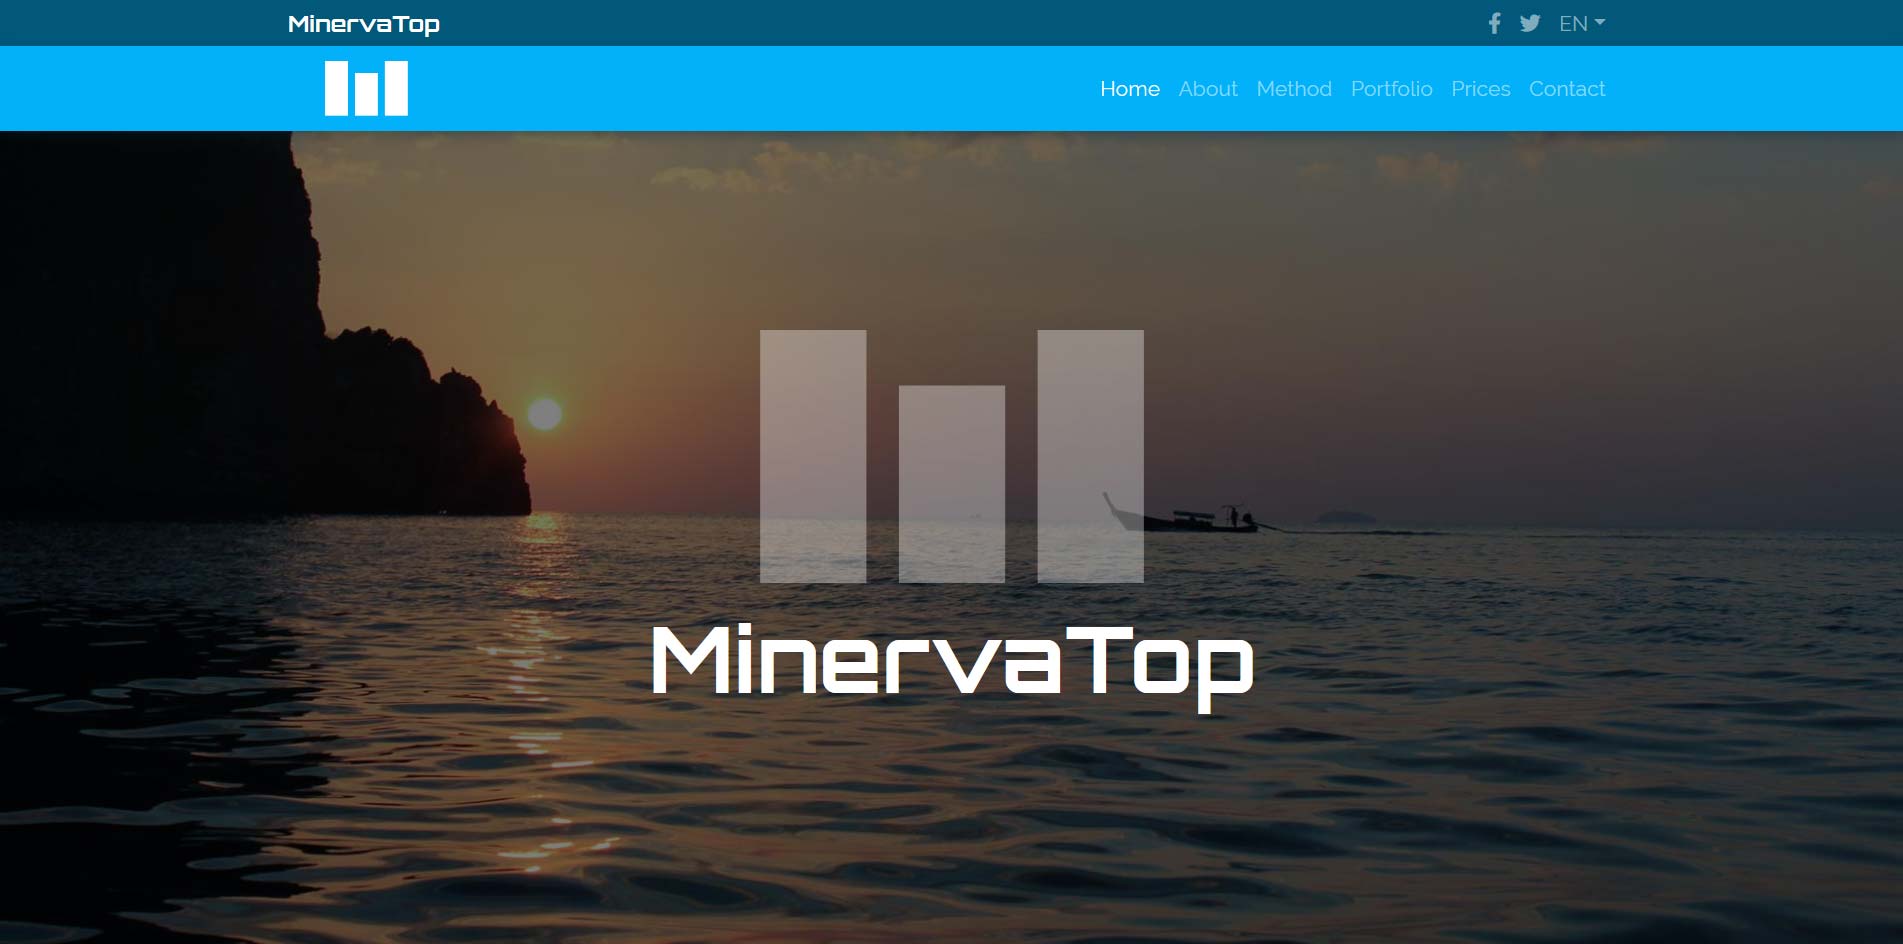 MinervaTop: indagini di mercato, sondaggi politici e di opinione